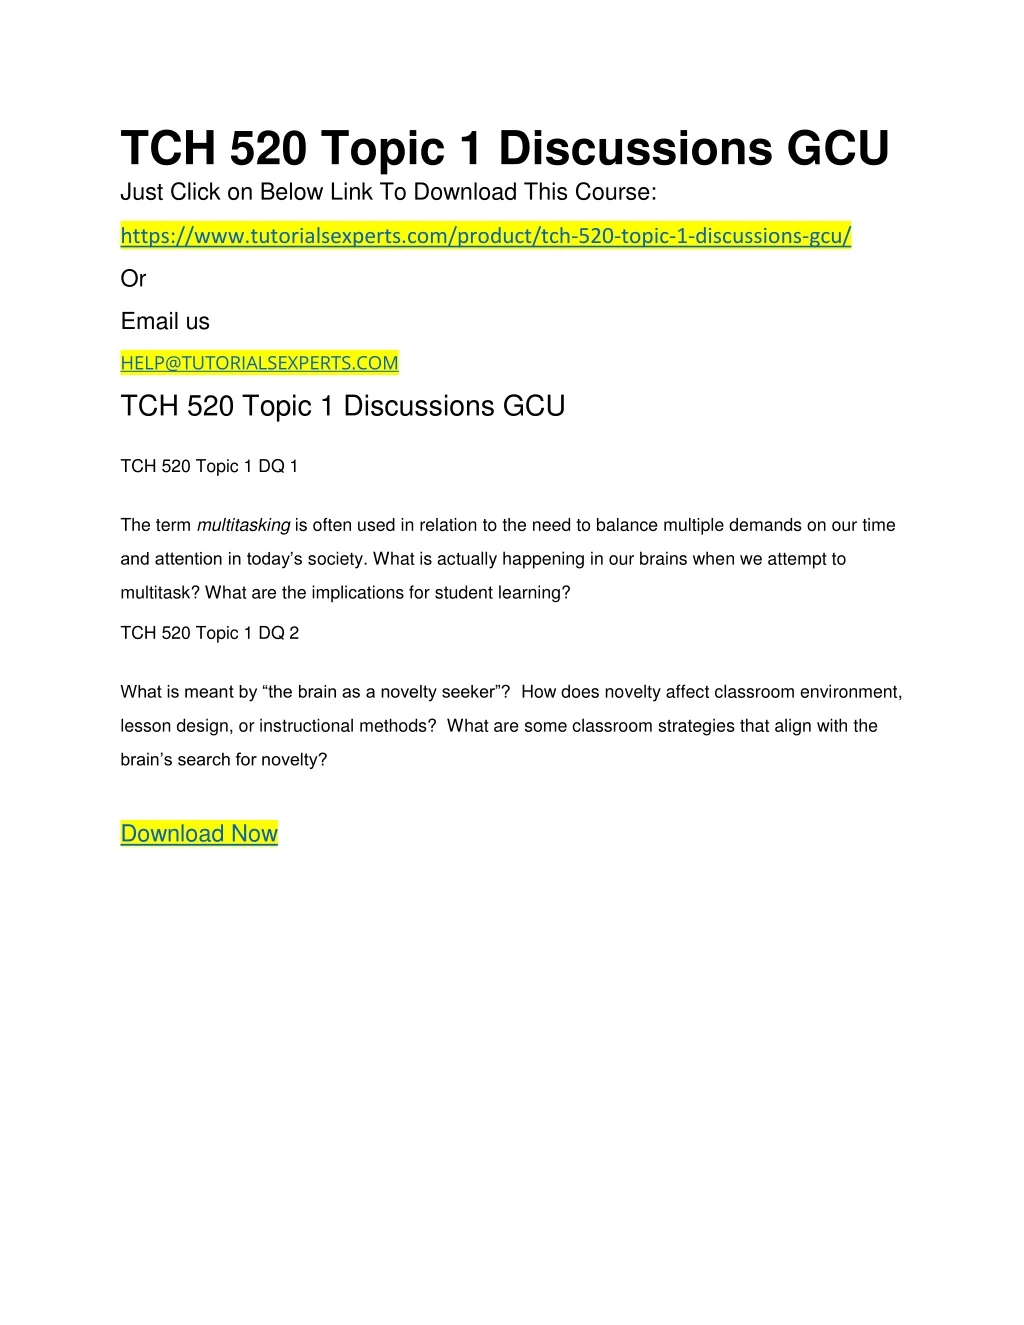 tch 520 topic 1 discussions gcu just click